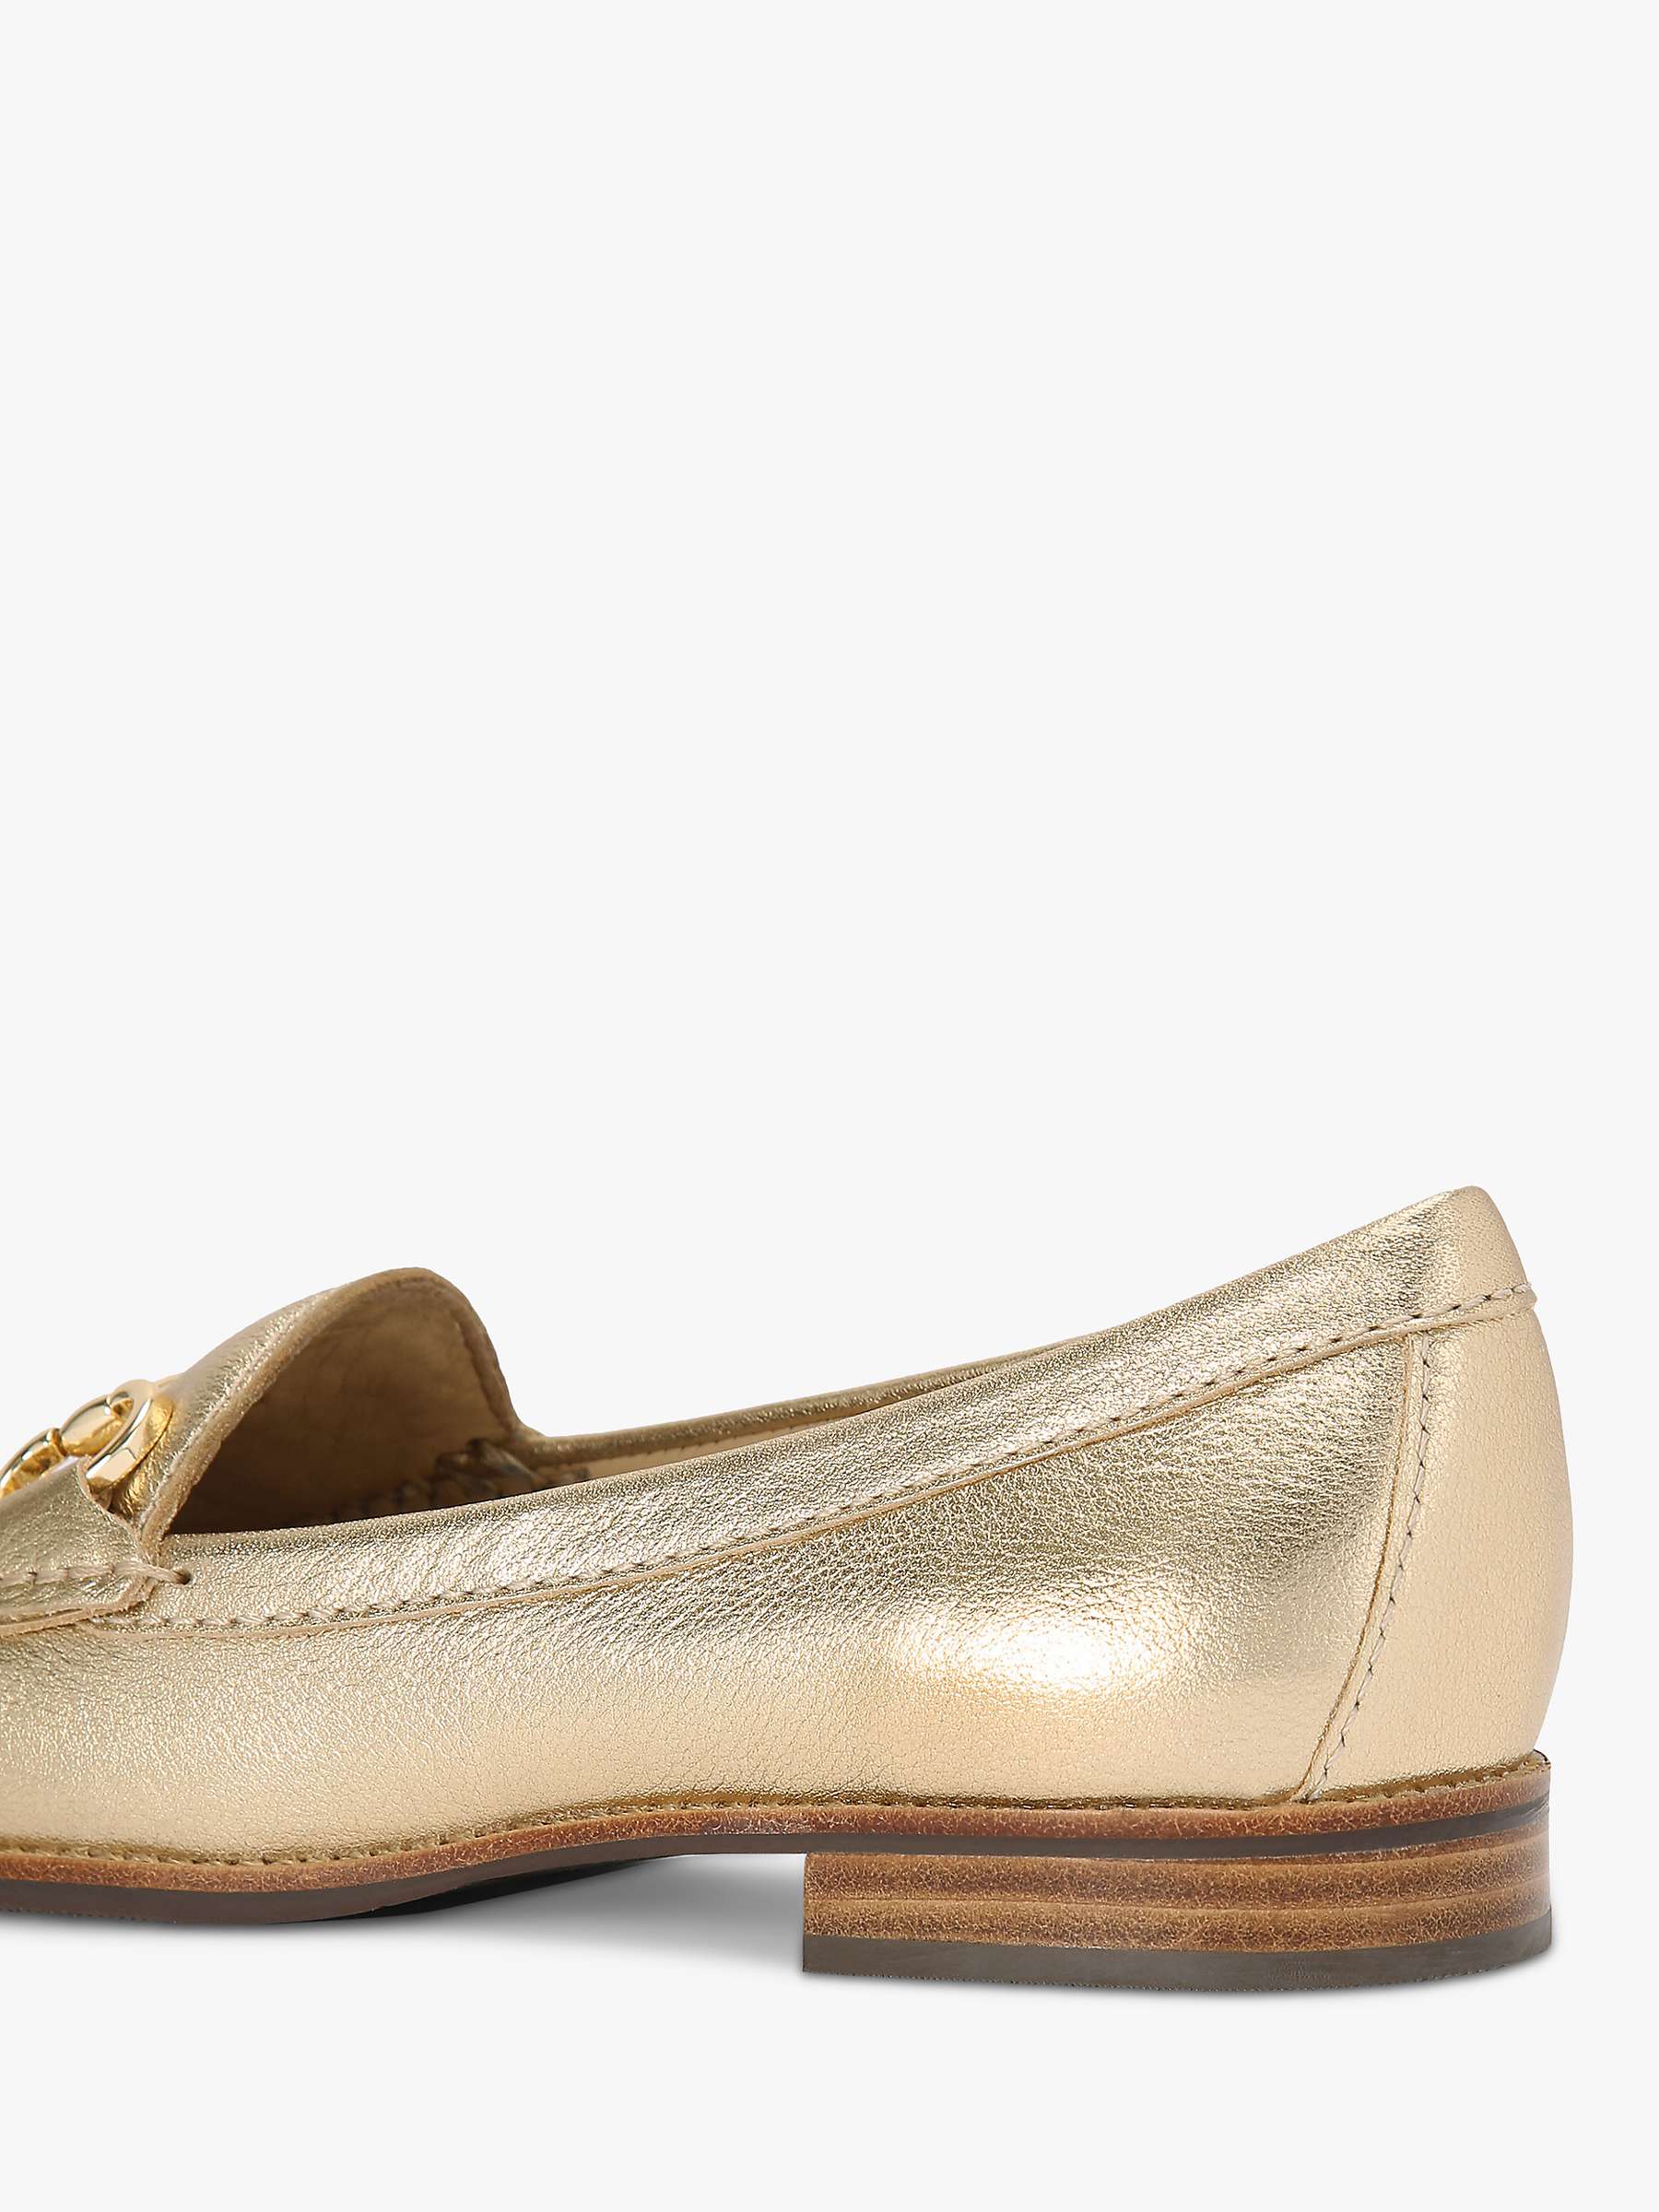 Buy KG Kurt Geiger Matilda Leather Slip On Loafers, Gold Online at johnlewis.com